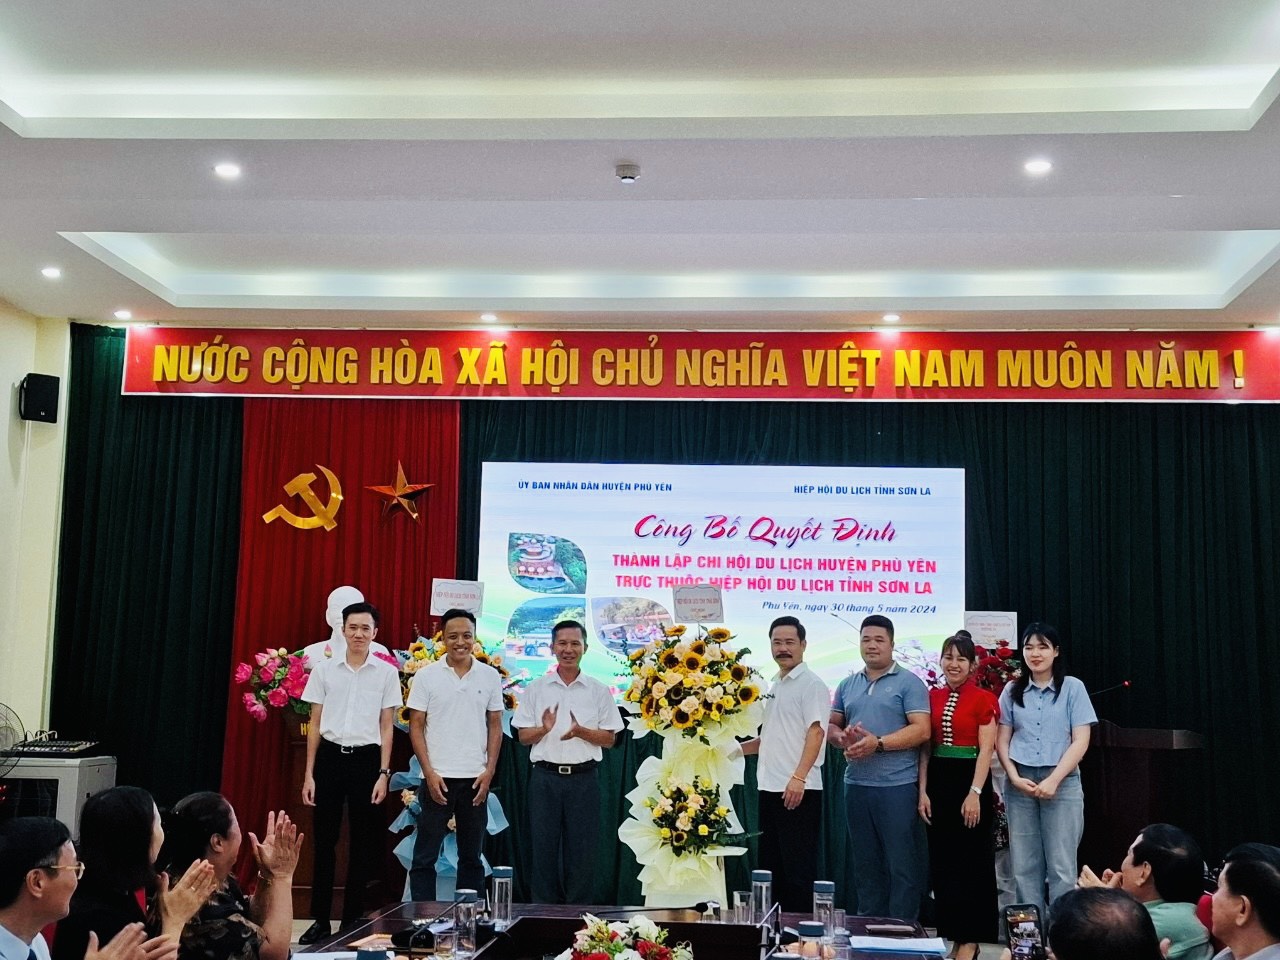 Phù Yên công bố Quyết định thành lập Chi hội du lịch huyện Phù Yên.